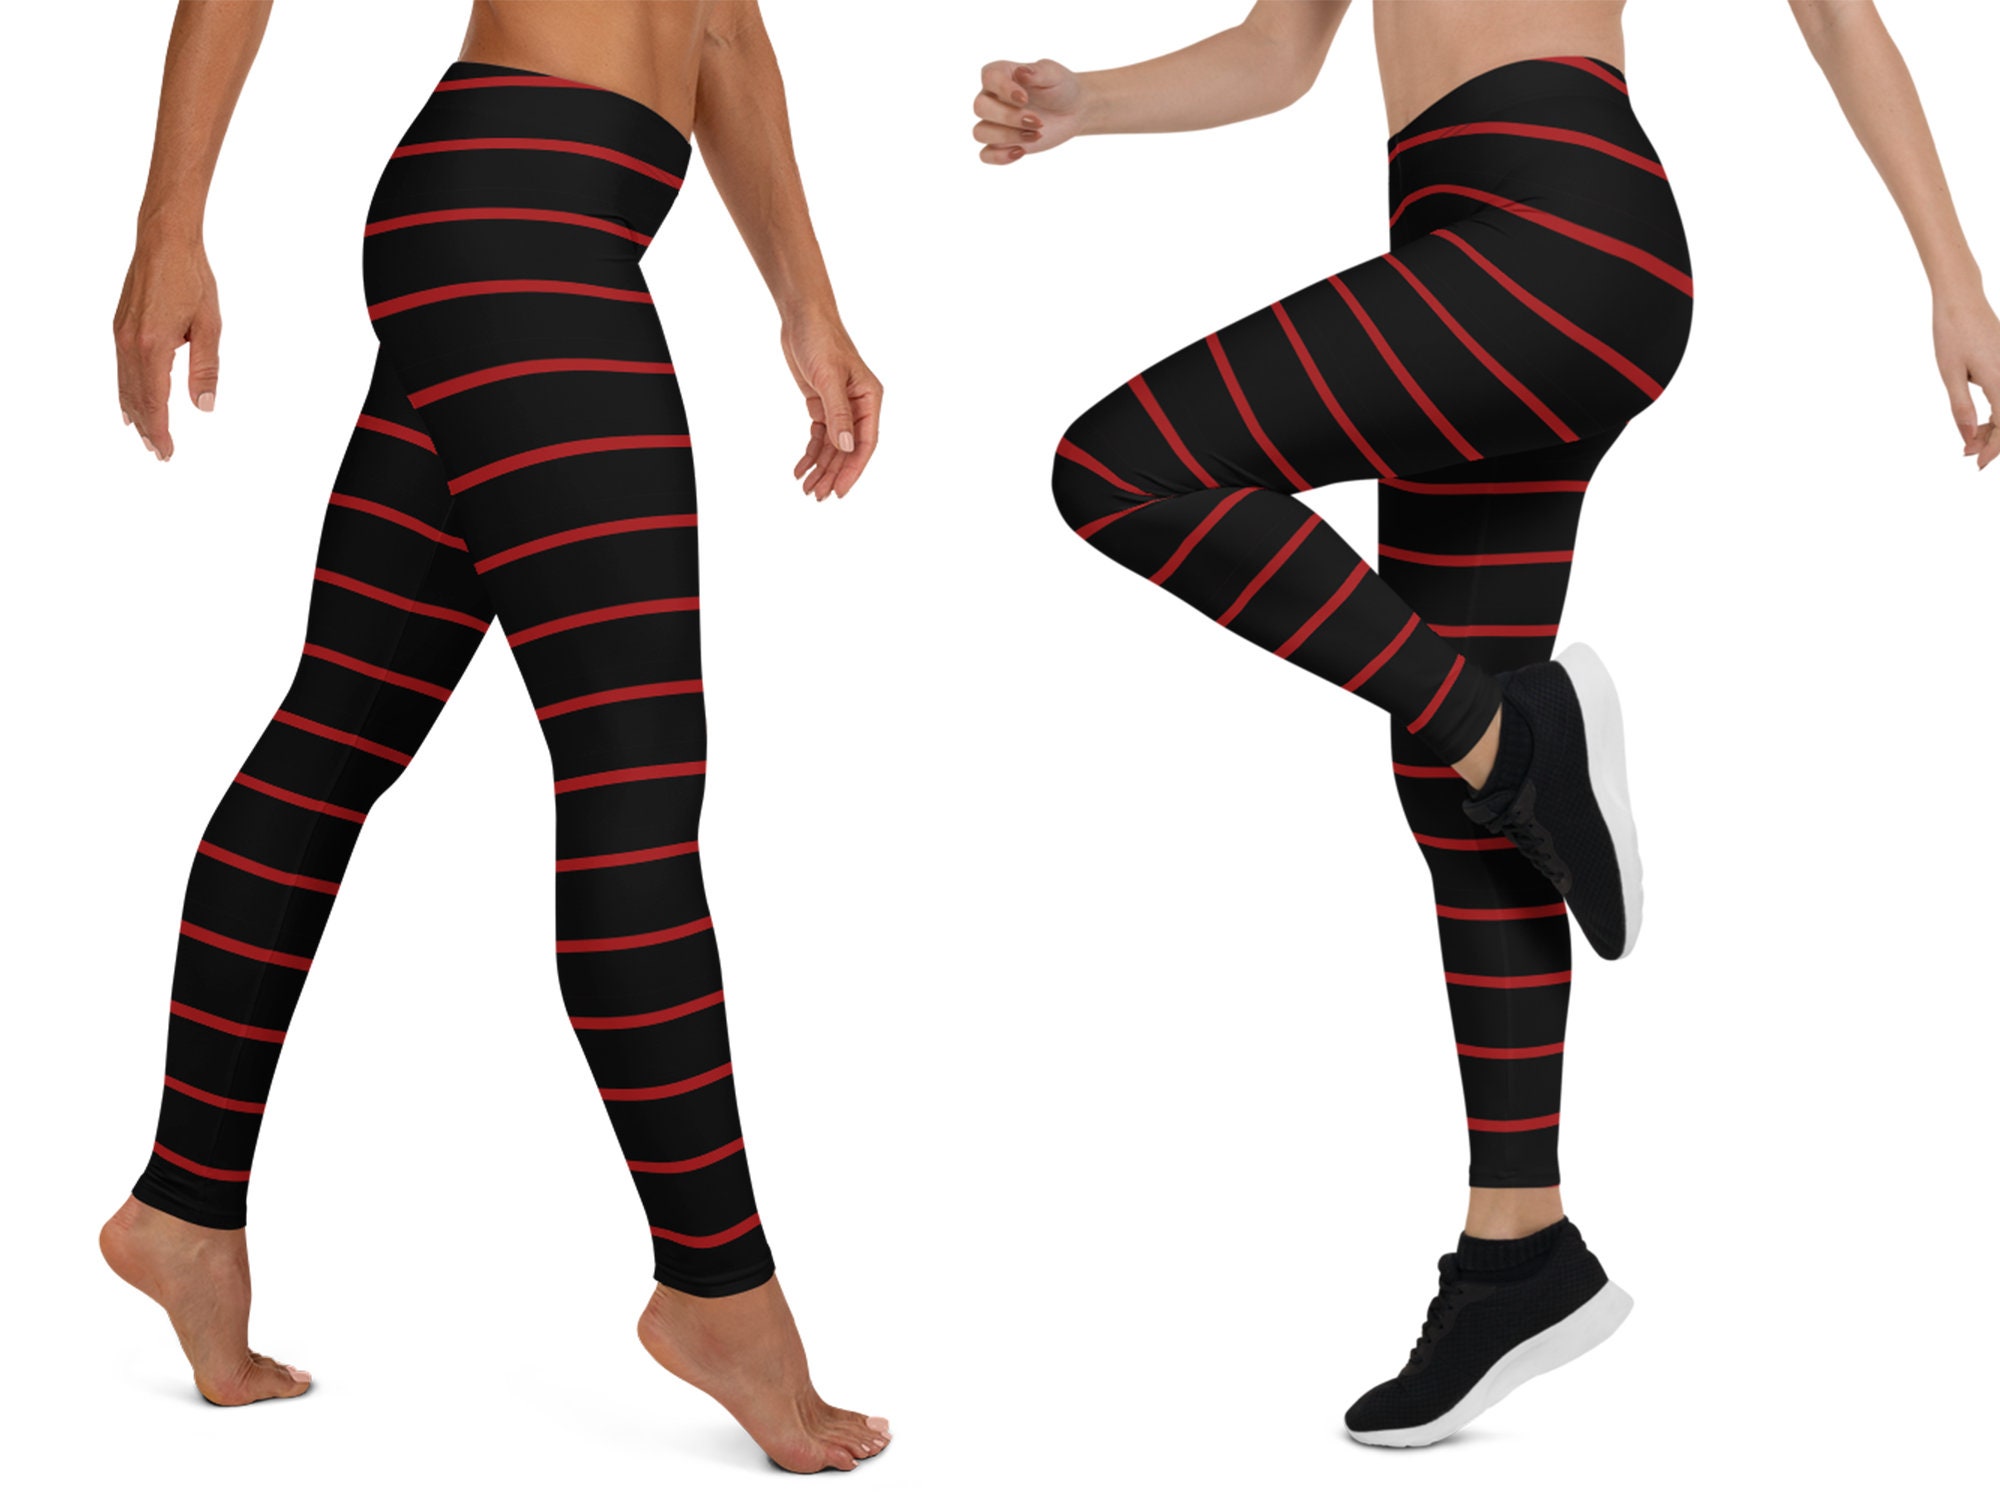  STARCOVE Leggings de yoga de Ombre negro y rojo, leggings de  teñido anudado de entrenamiento para mujer, polainas atractivas impresas  rojas y negras, Blanco : Starcove: Ropa, Zapatos y Joyería